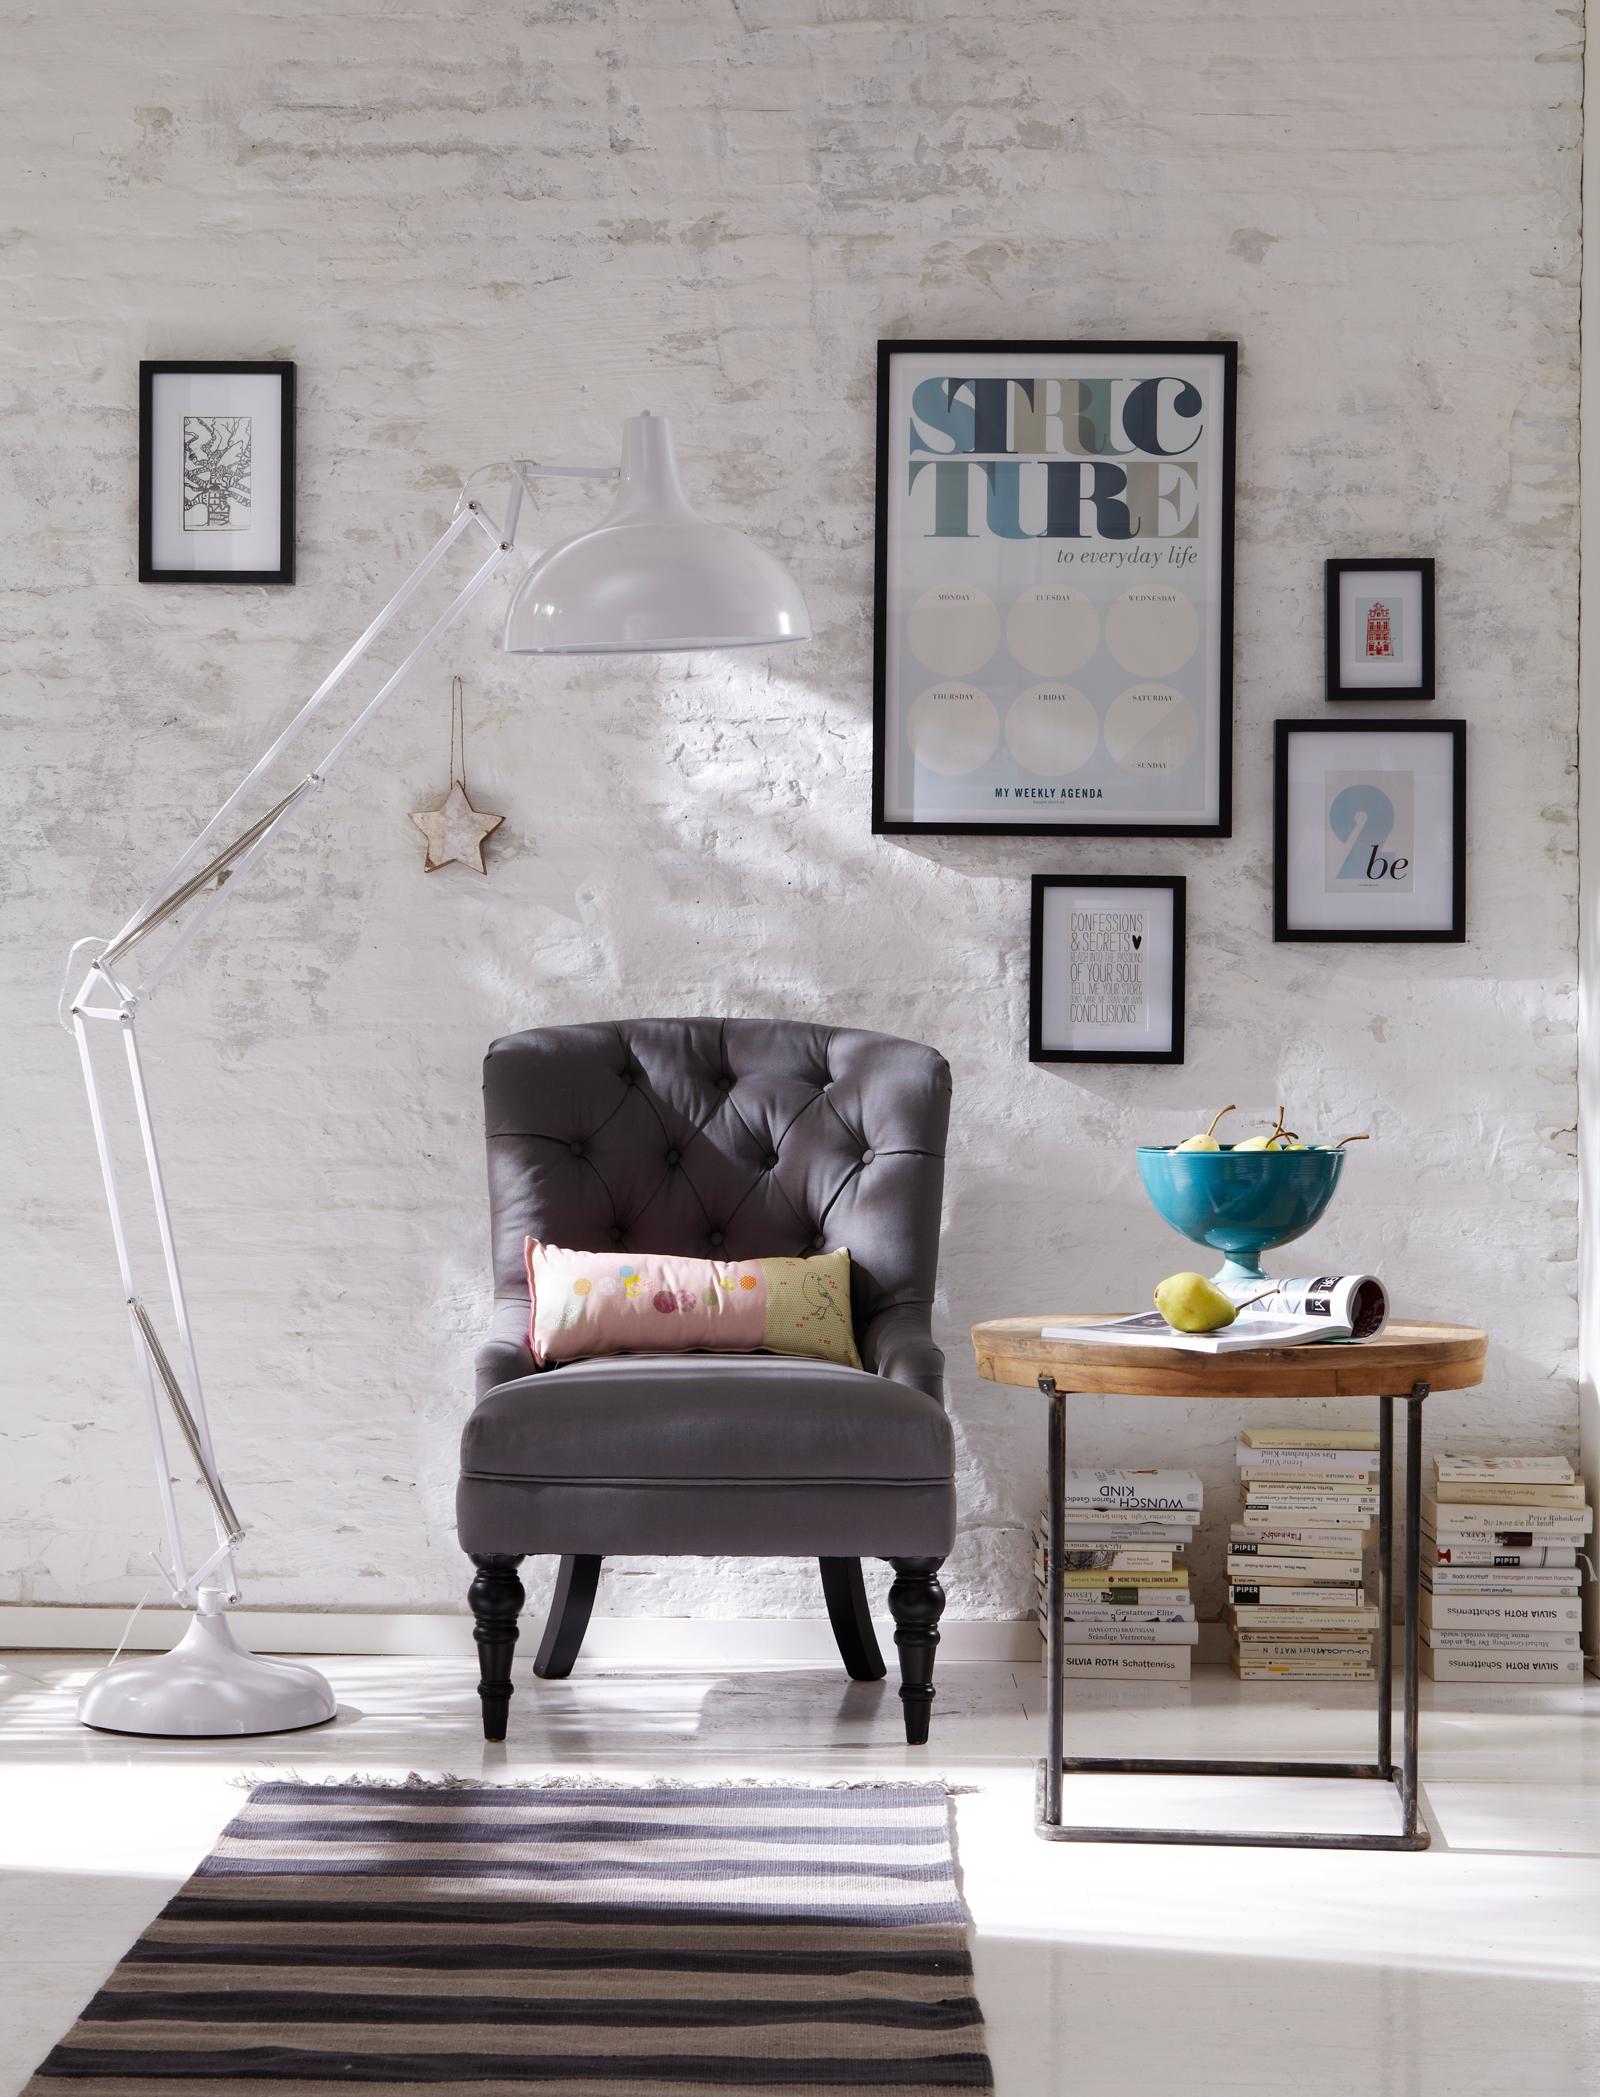 Weiße Stehleuchte und grauer Lounge-Sessel im modernen Wohnzimmer #beistelltisch #shabbychic #industriedesign #gestreifterteppich #obstschale #weißesteinwand ©Car Selbstbaumöbel